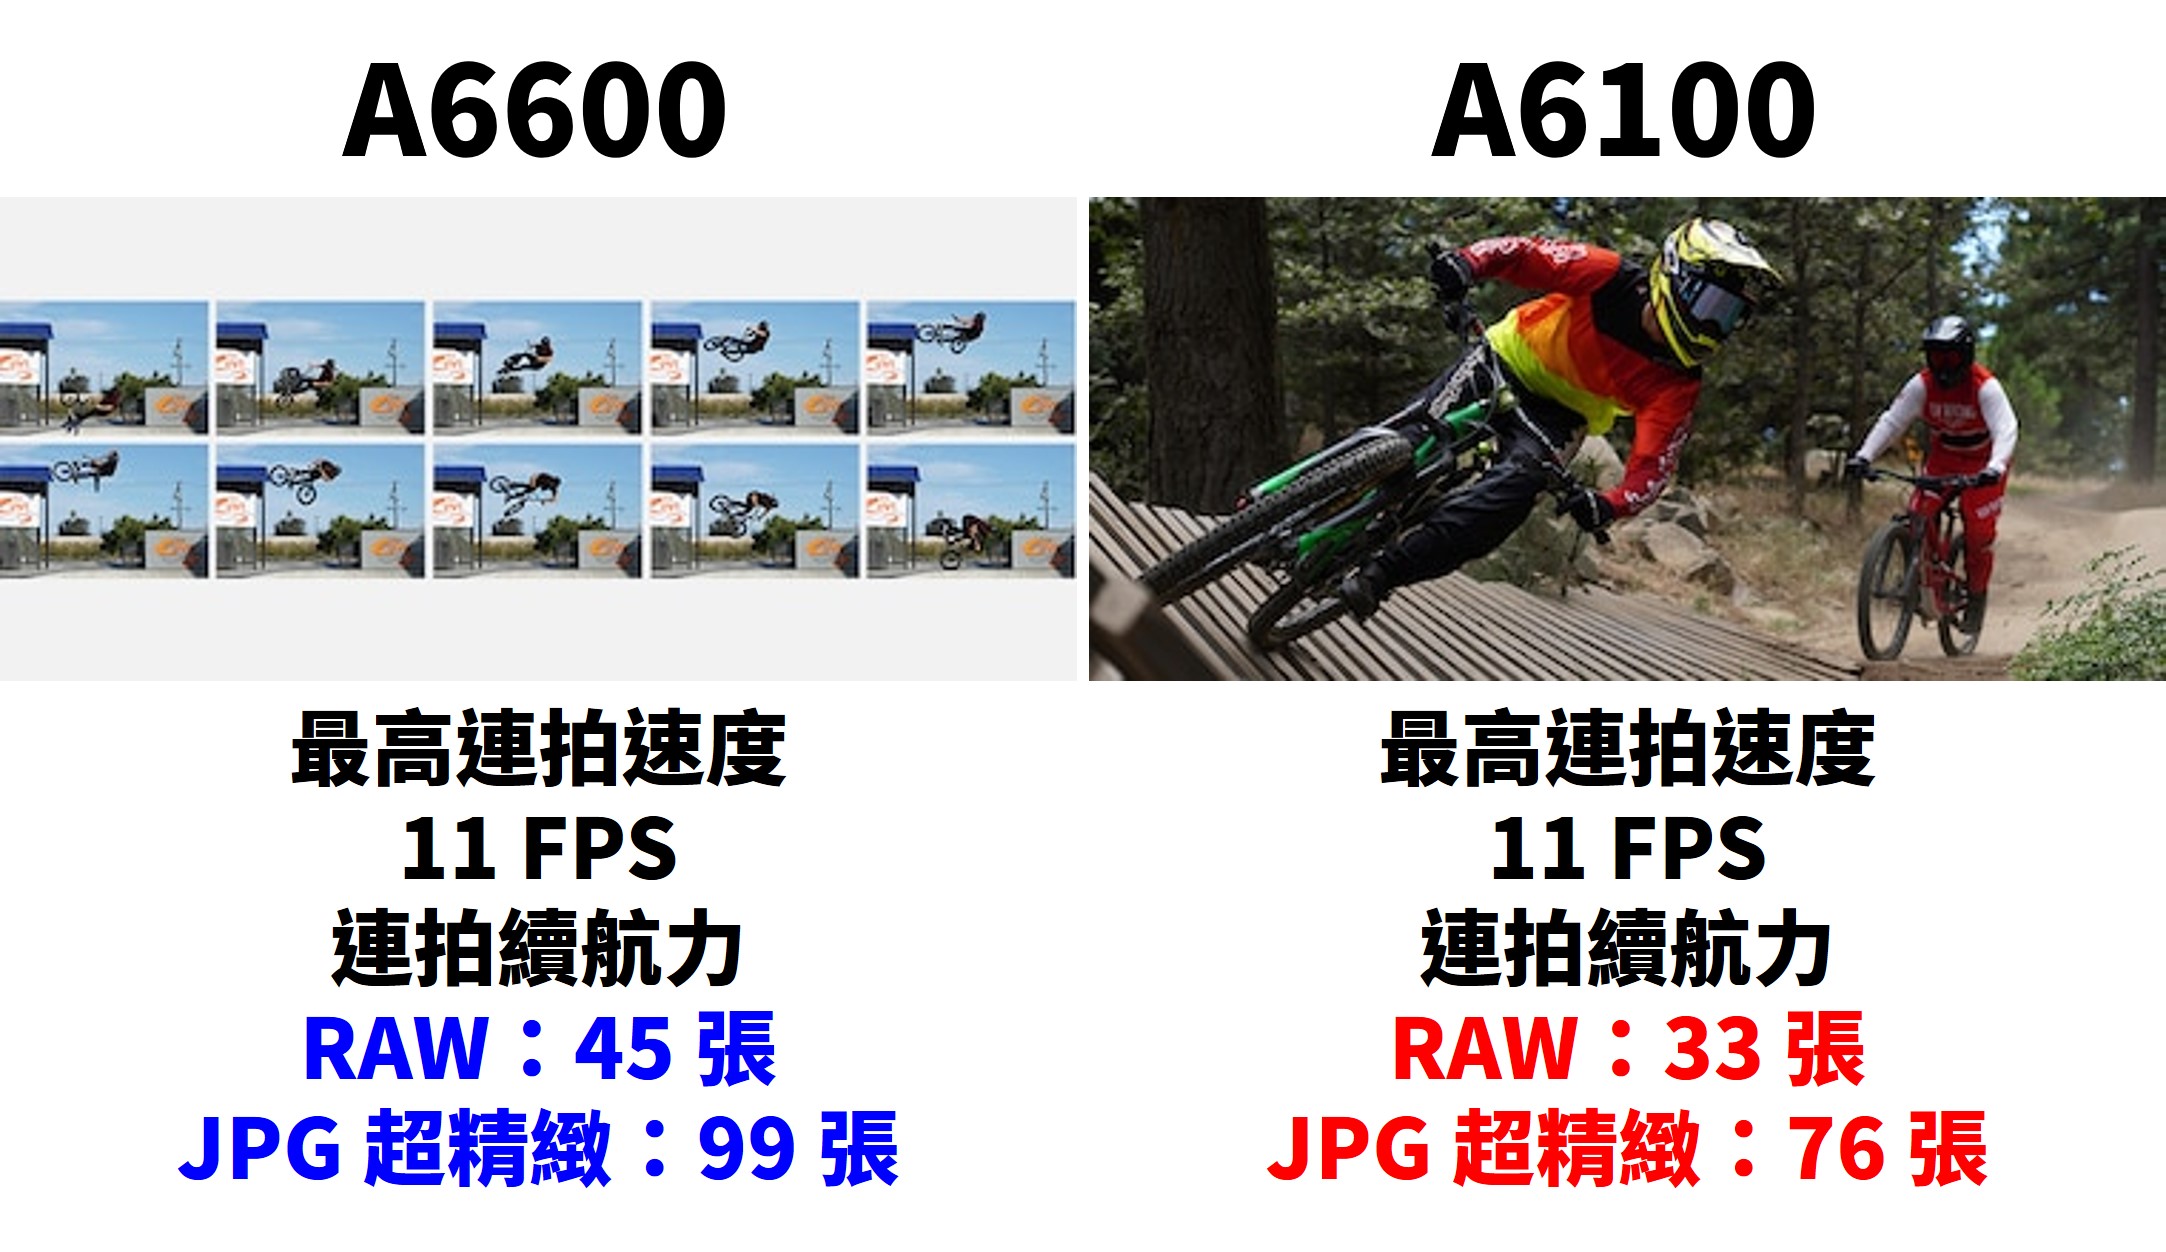 [比攝影105] A6600 A6100 購買比較 ，A6600 旗艦等級規格齊全，A6100 親民價格性能不馬虎